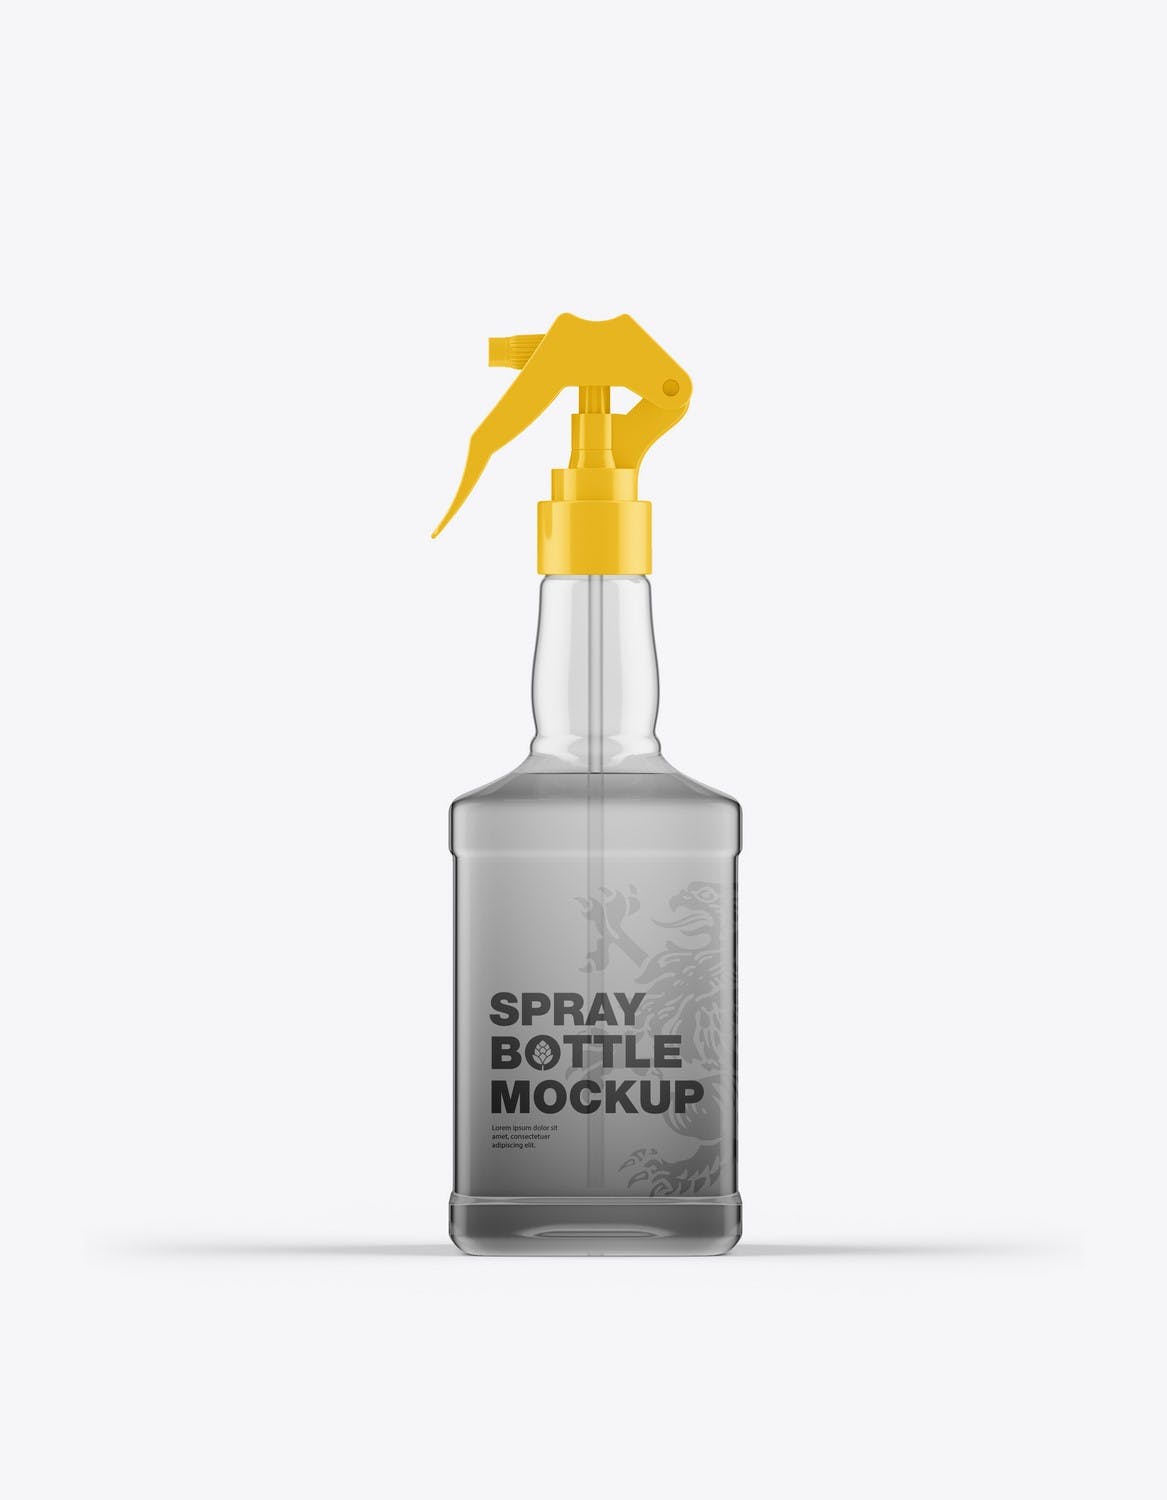 玻璃喷雾瓶包装设计样机 Pack Glass Spray Bottles Mockup 样机素材 第6张